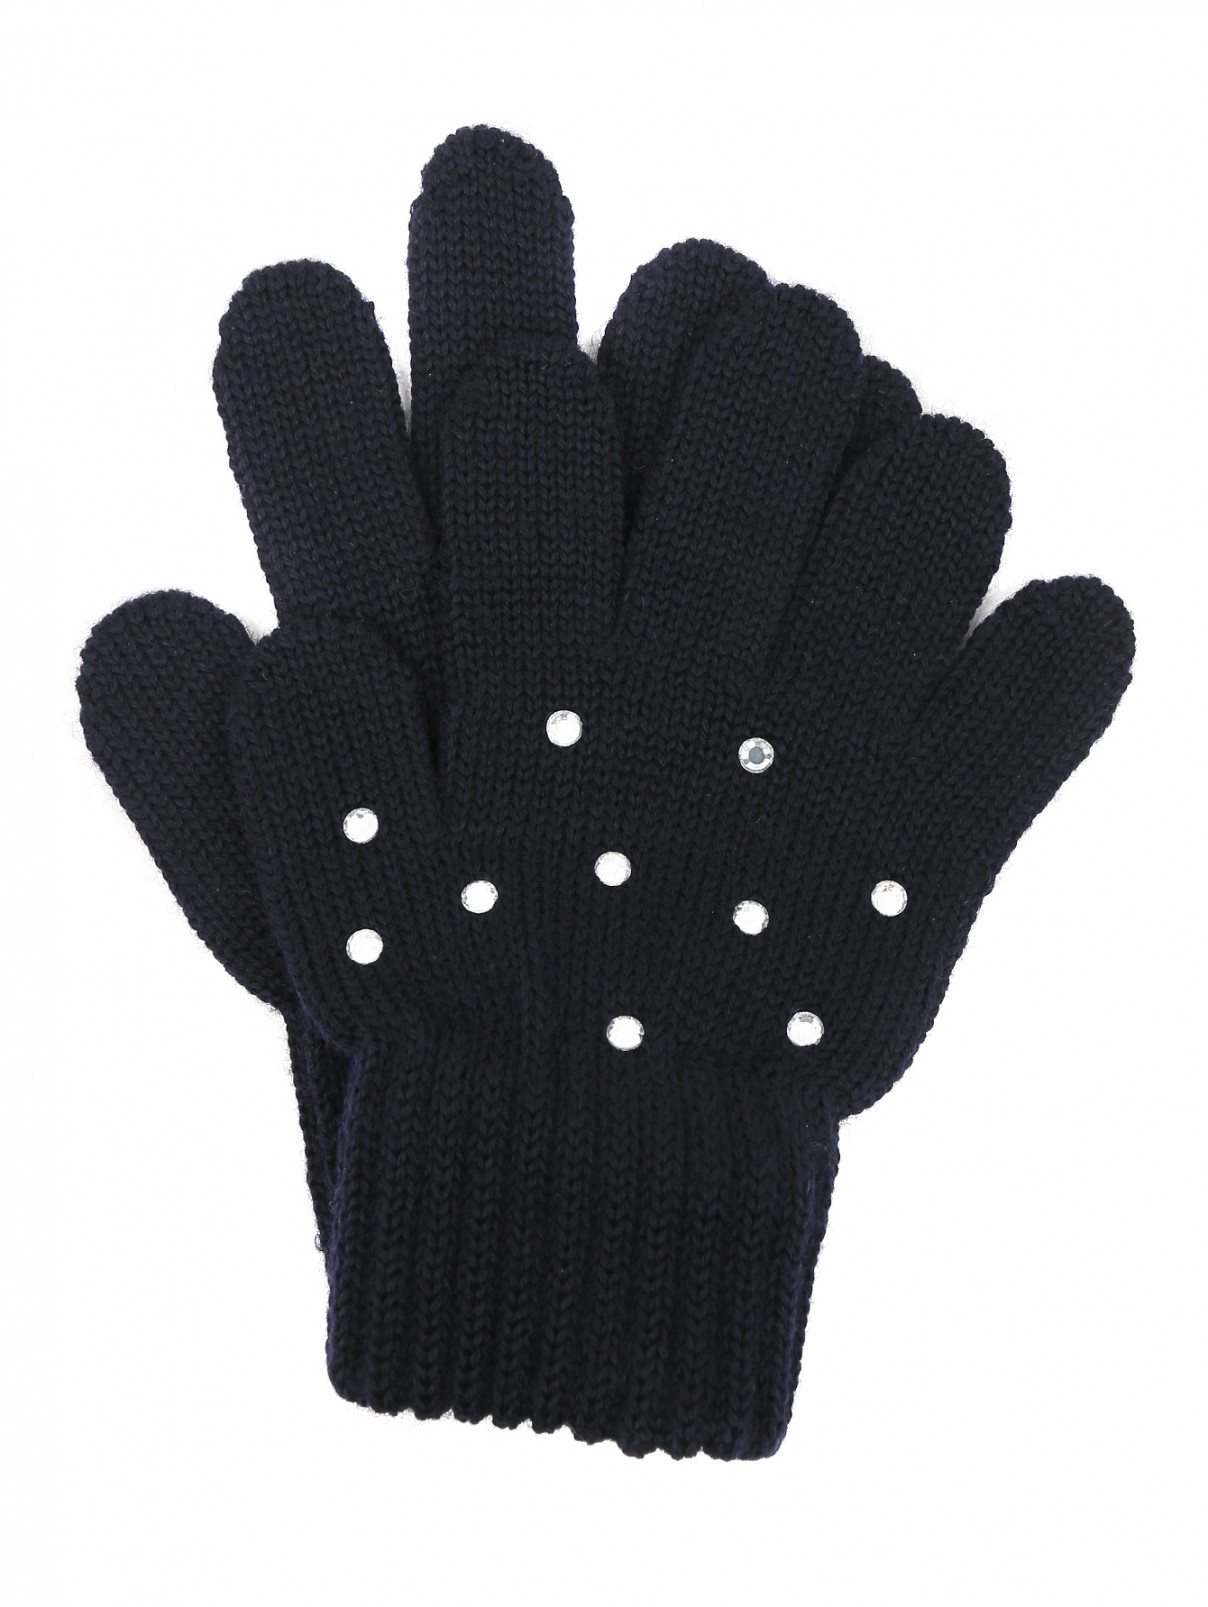 Перчатки трикотажные из шерсти со стразами Catya  –  Общий вид  – Цвет:  Черный